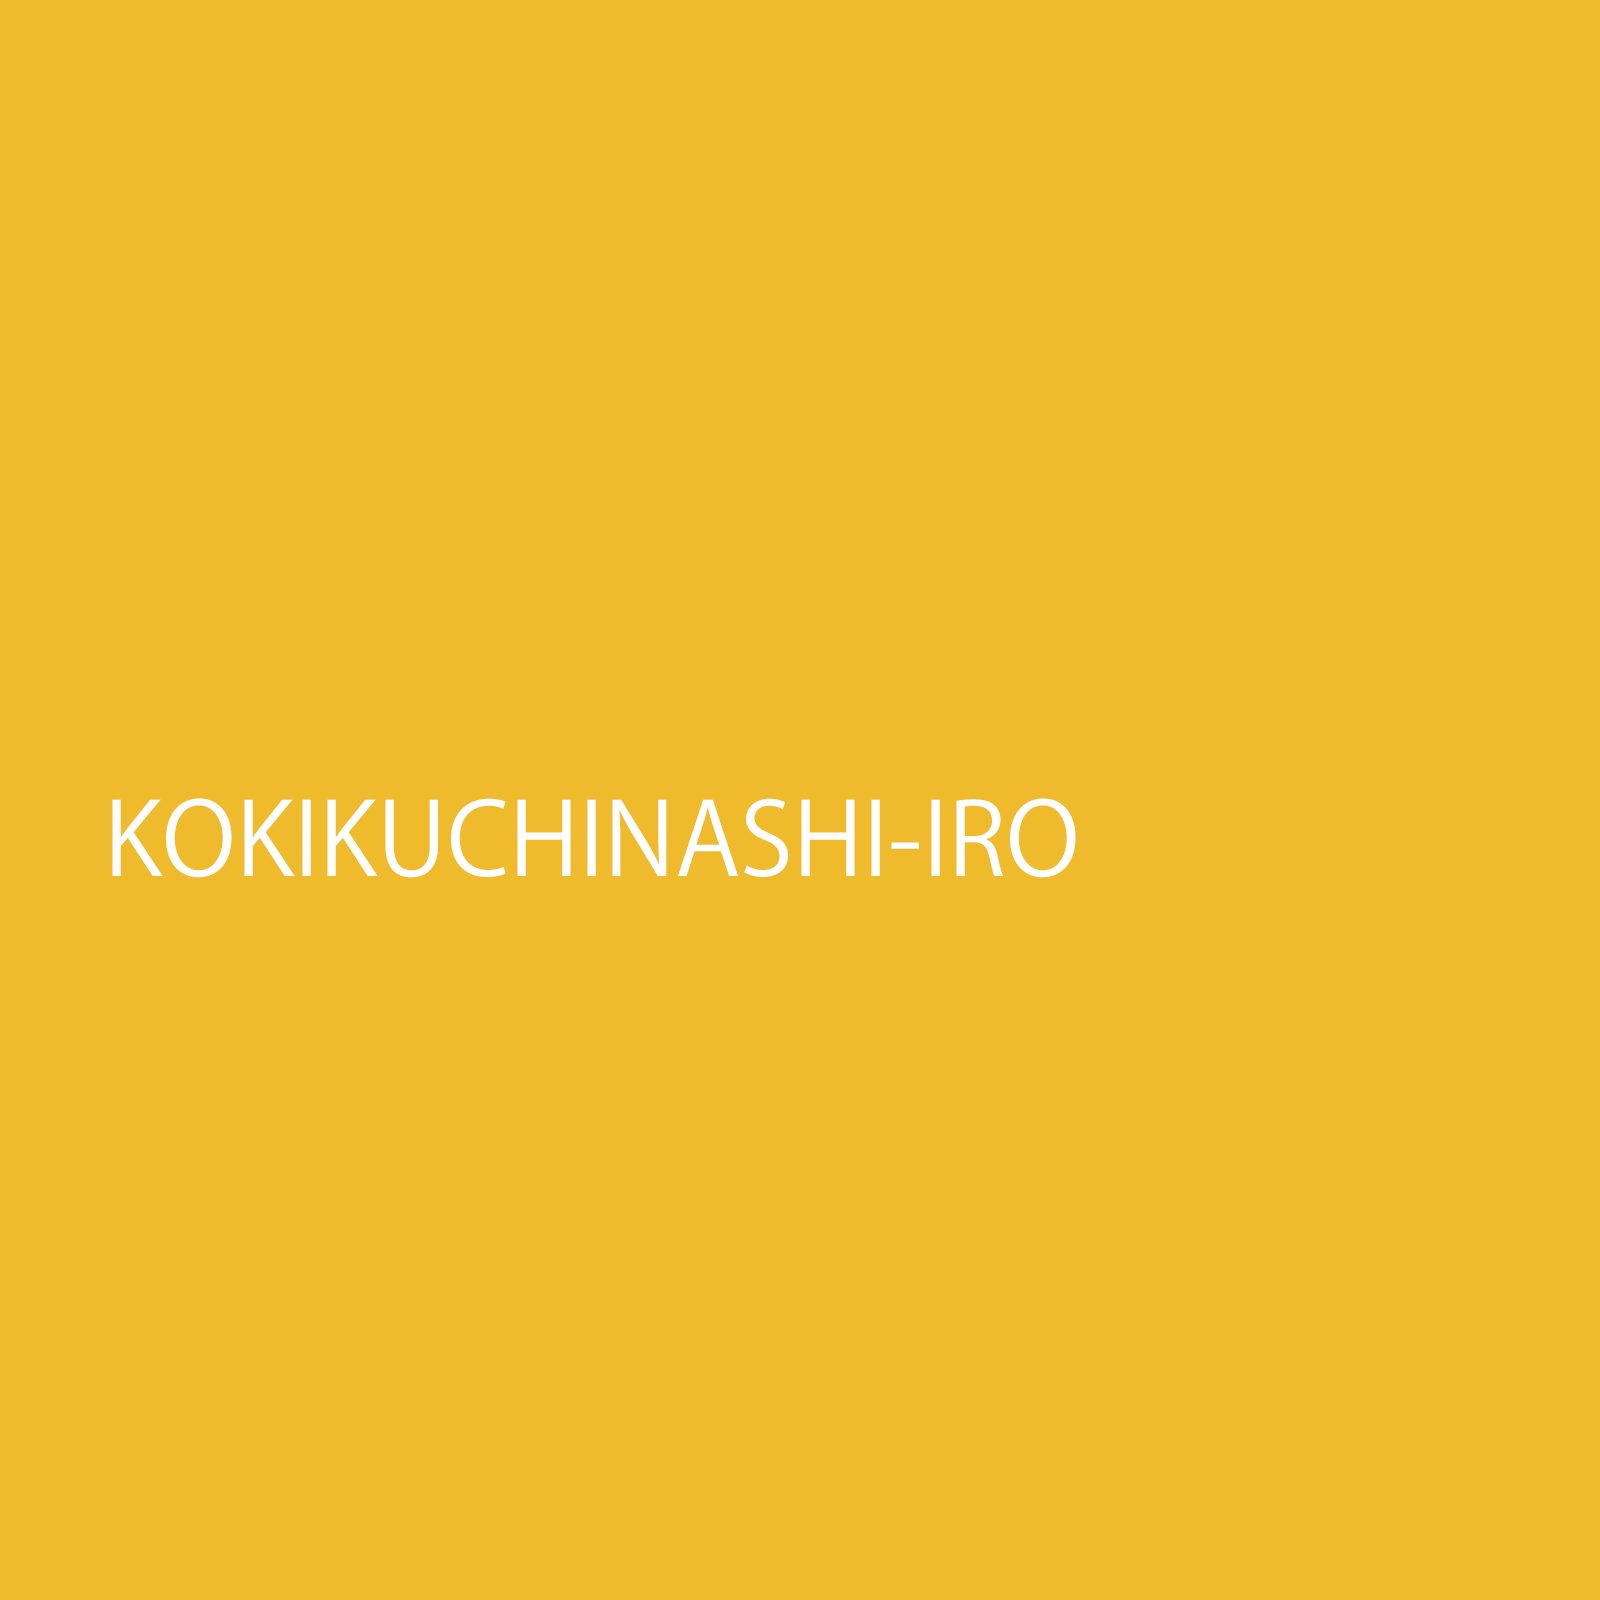 kokikuchinashiiro.jpg